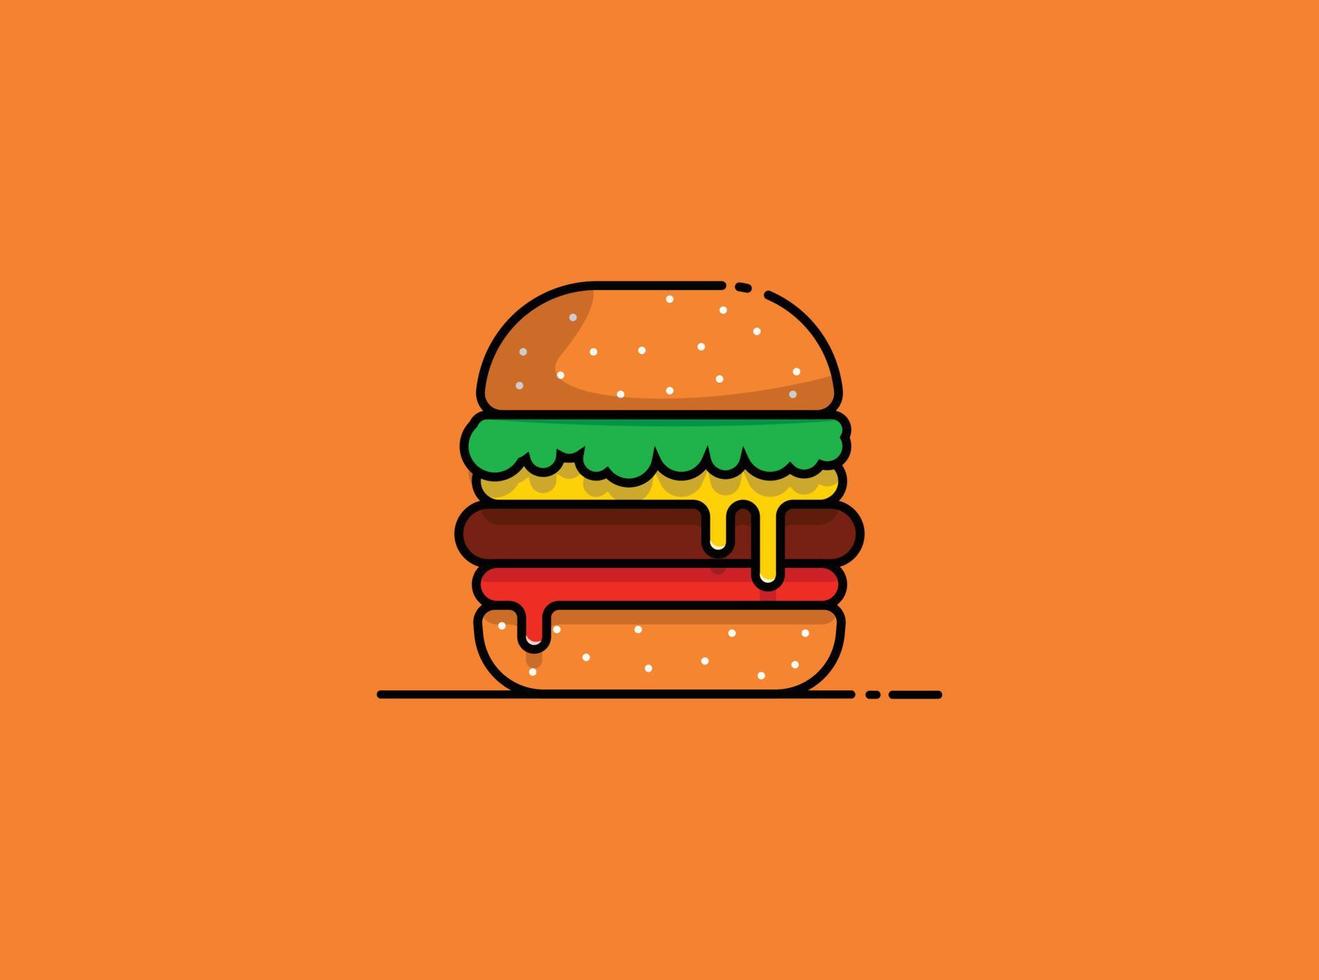 ilustración de hamburguesa grande vector